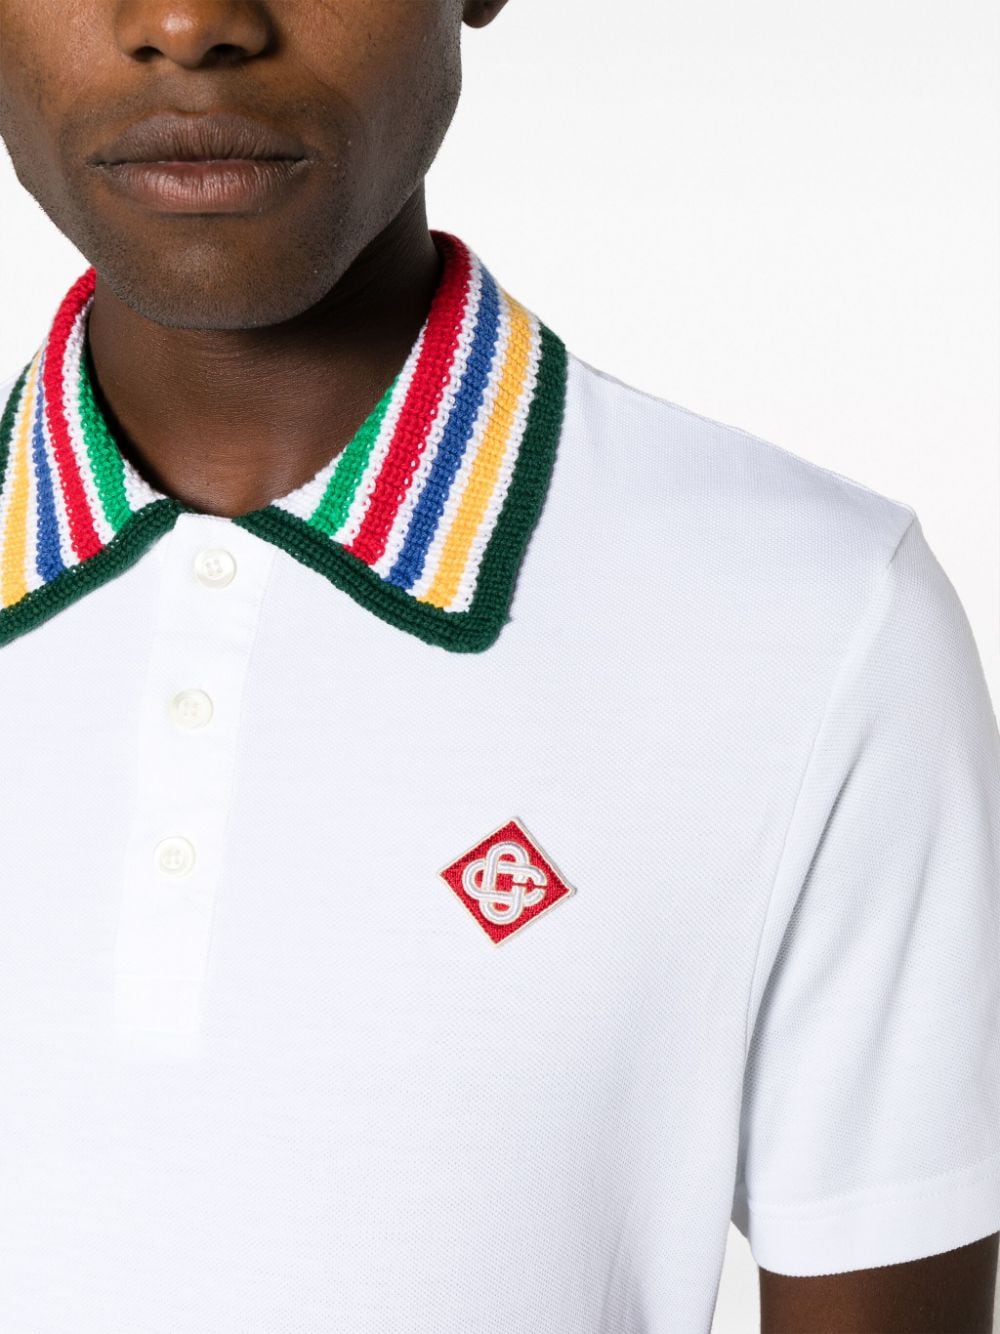 CASABLANCA MEN Primary Stripe Knit Collar Classic Polo Bright White - MAISONDEFASHION.COM